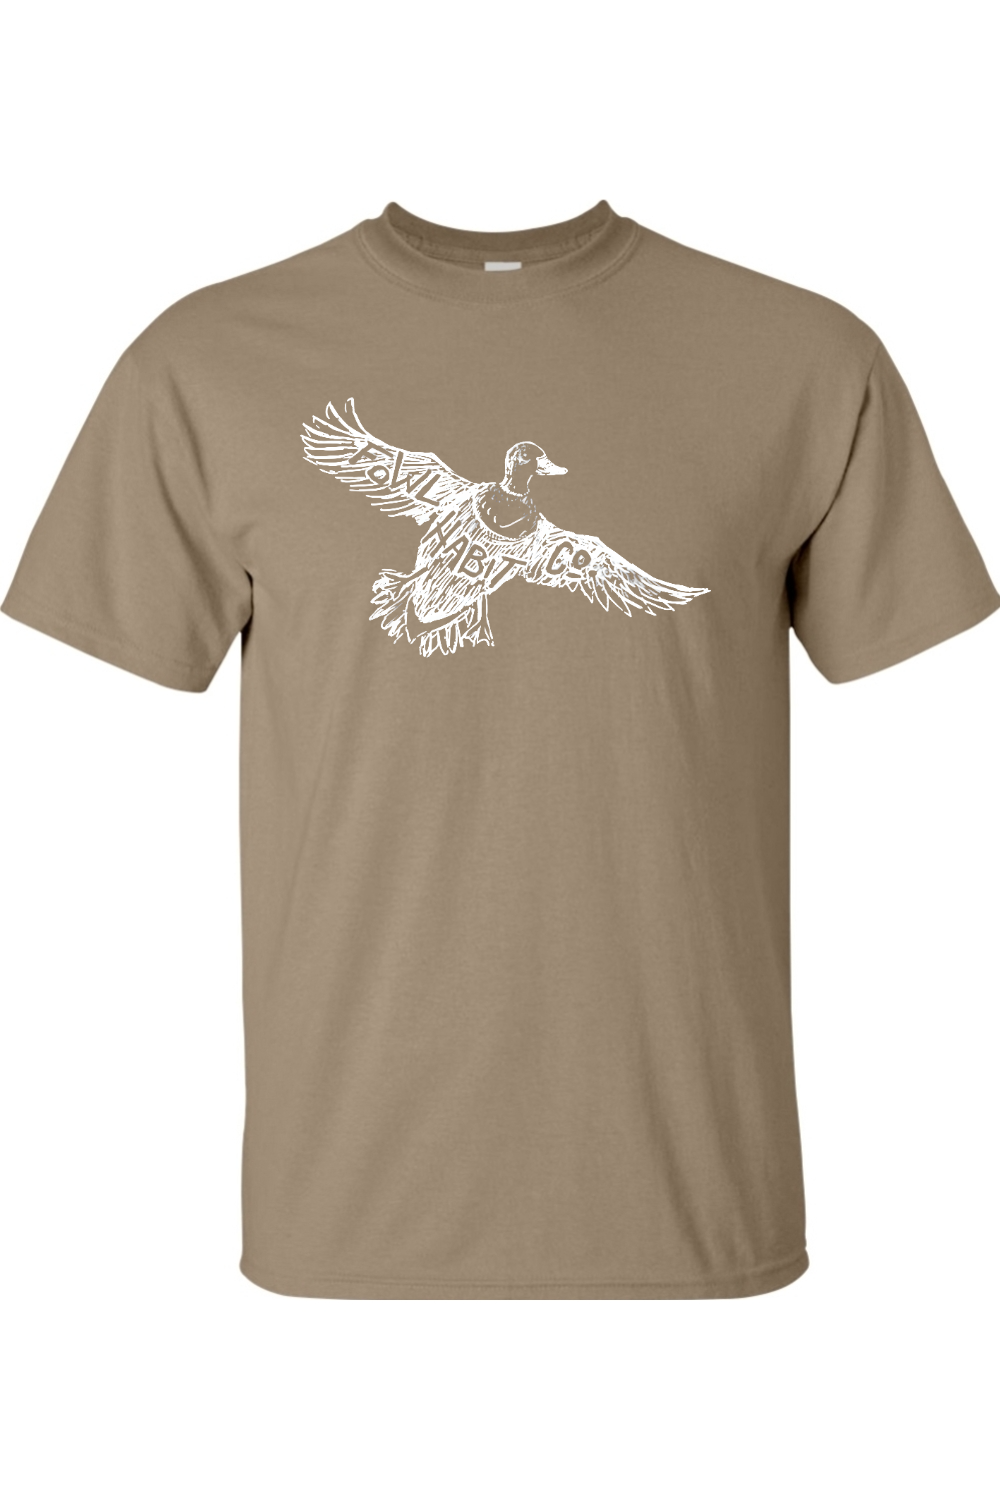 Mallard Drake T-Shirt - Fowl Habit Co.